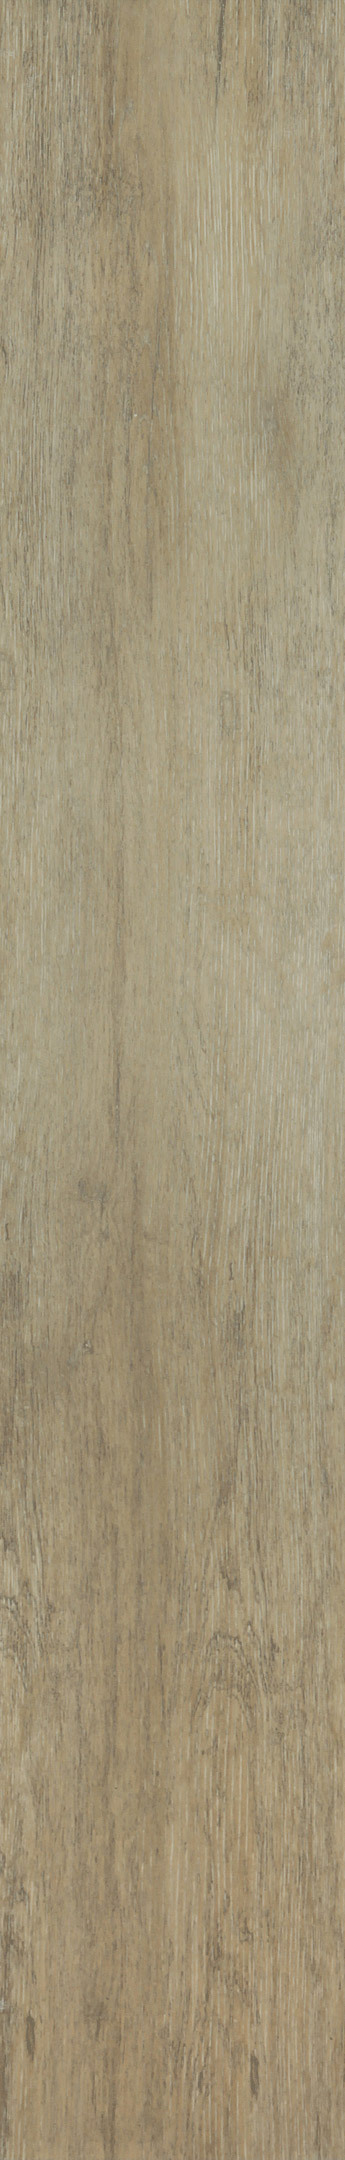 Керамогранит Estima Dream Wood DW02 светло-коричневый 1200х194х10 мм (7 шт.=1,63 кв.м) керамогранит ступень estima dream wood светло бежевый dw01 1200х300х10 мм